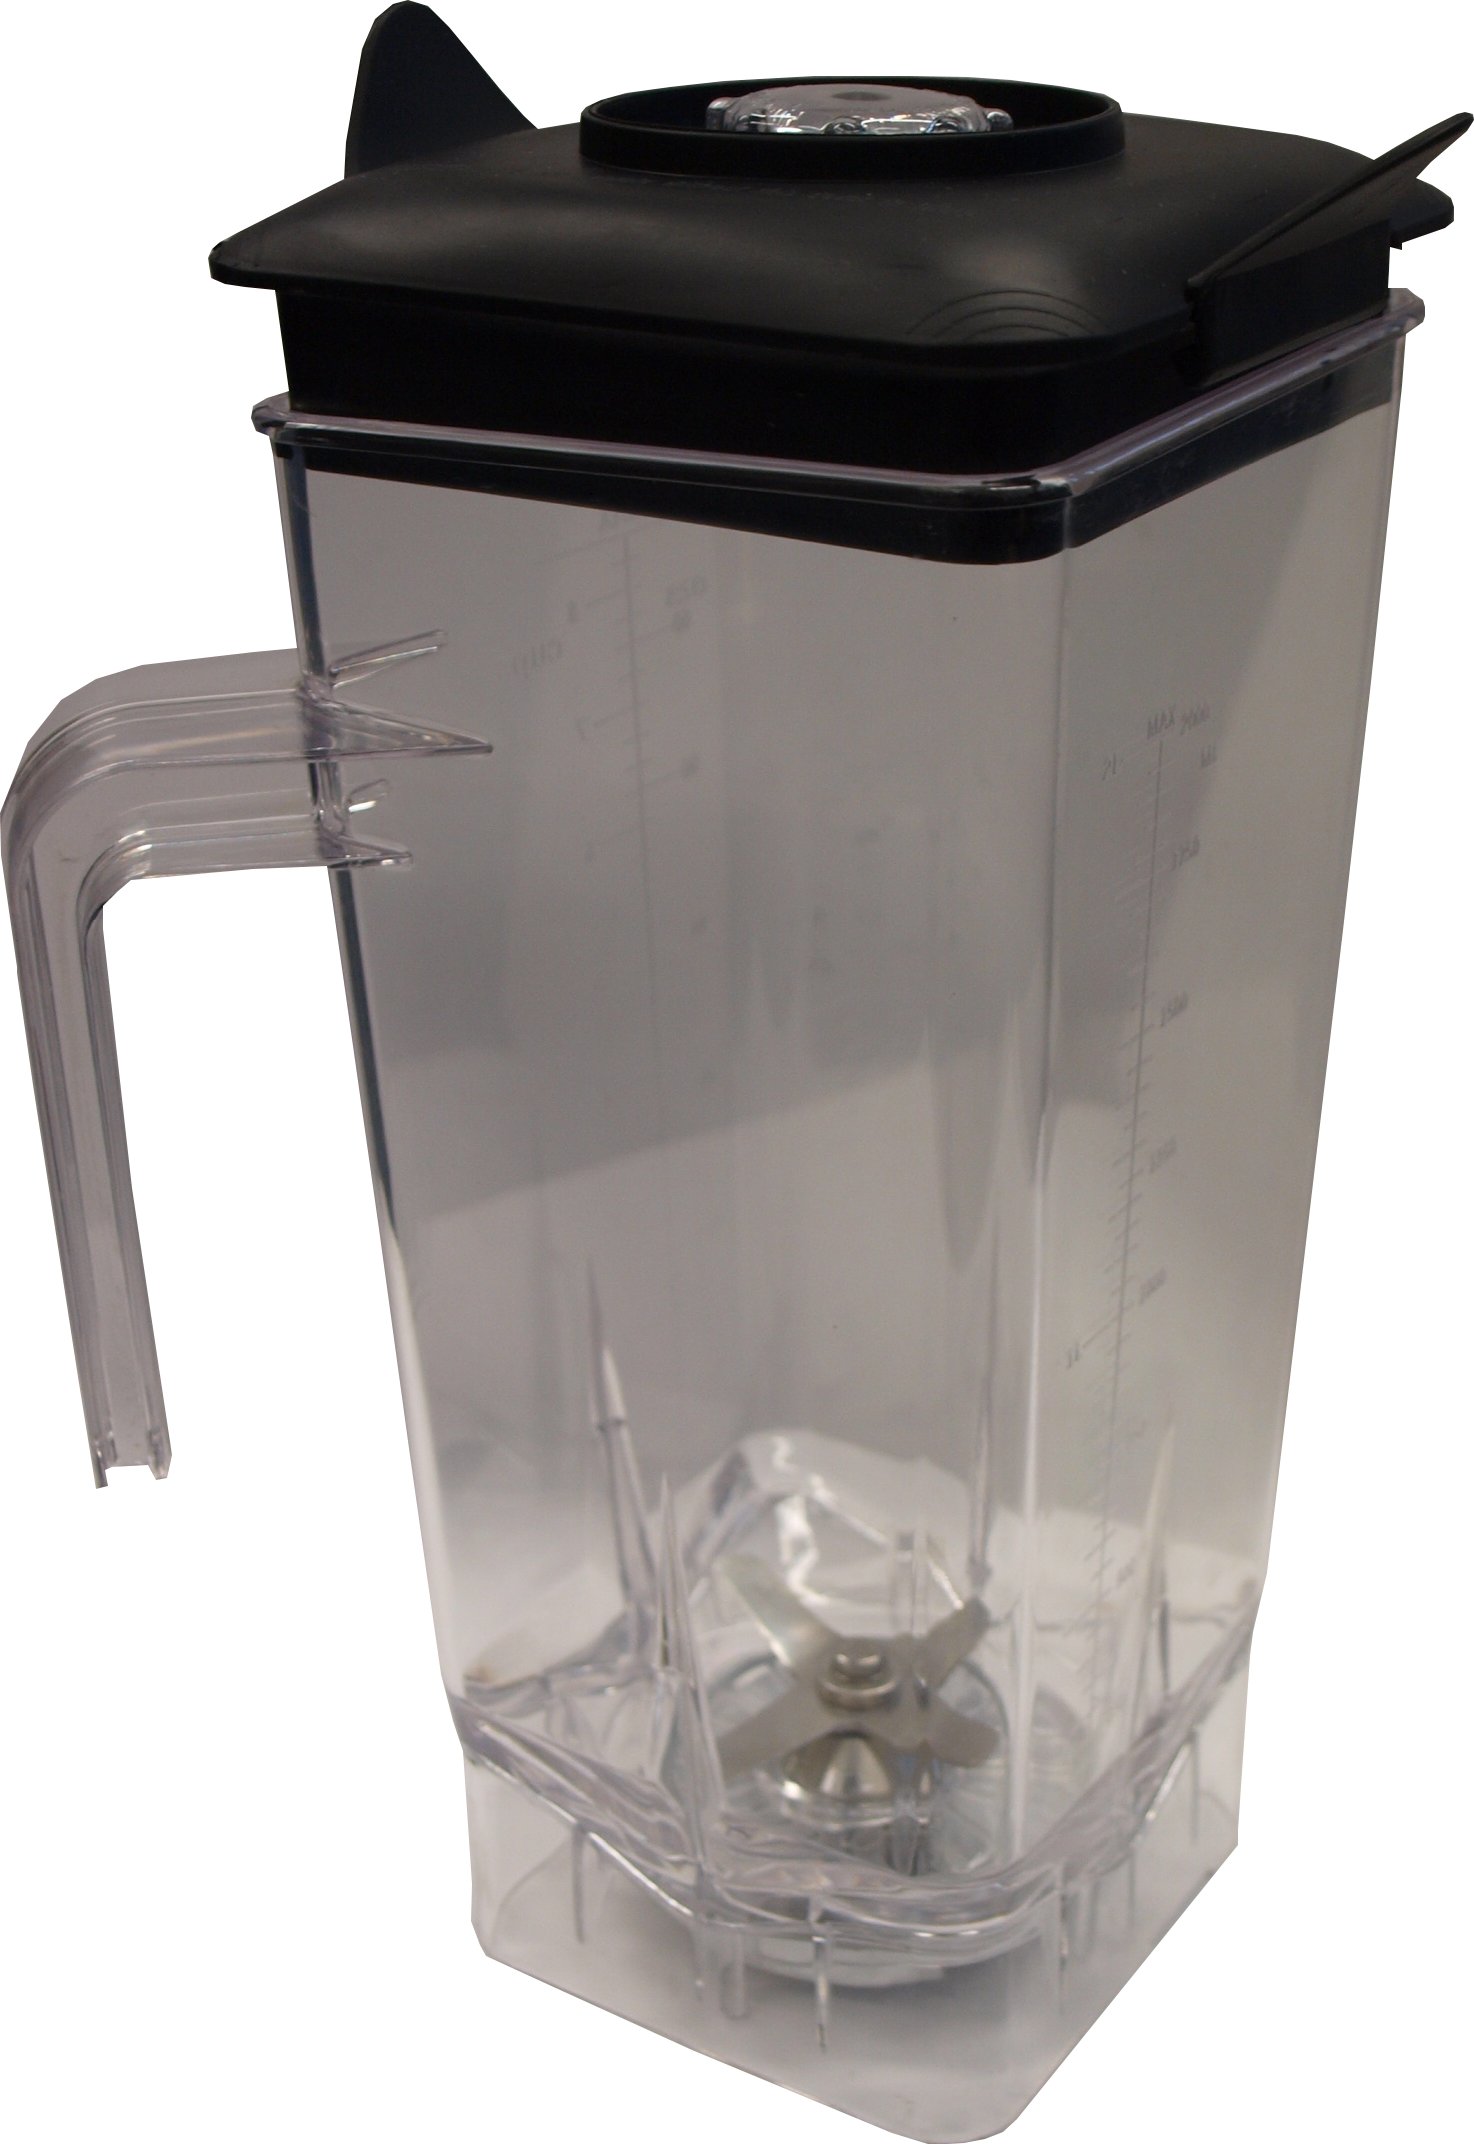 Spare jug for CS-6600D blender